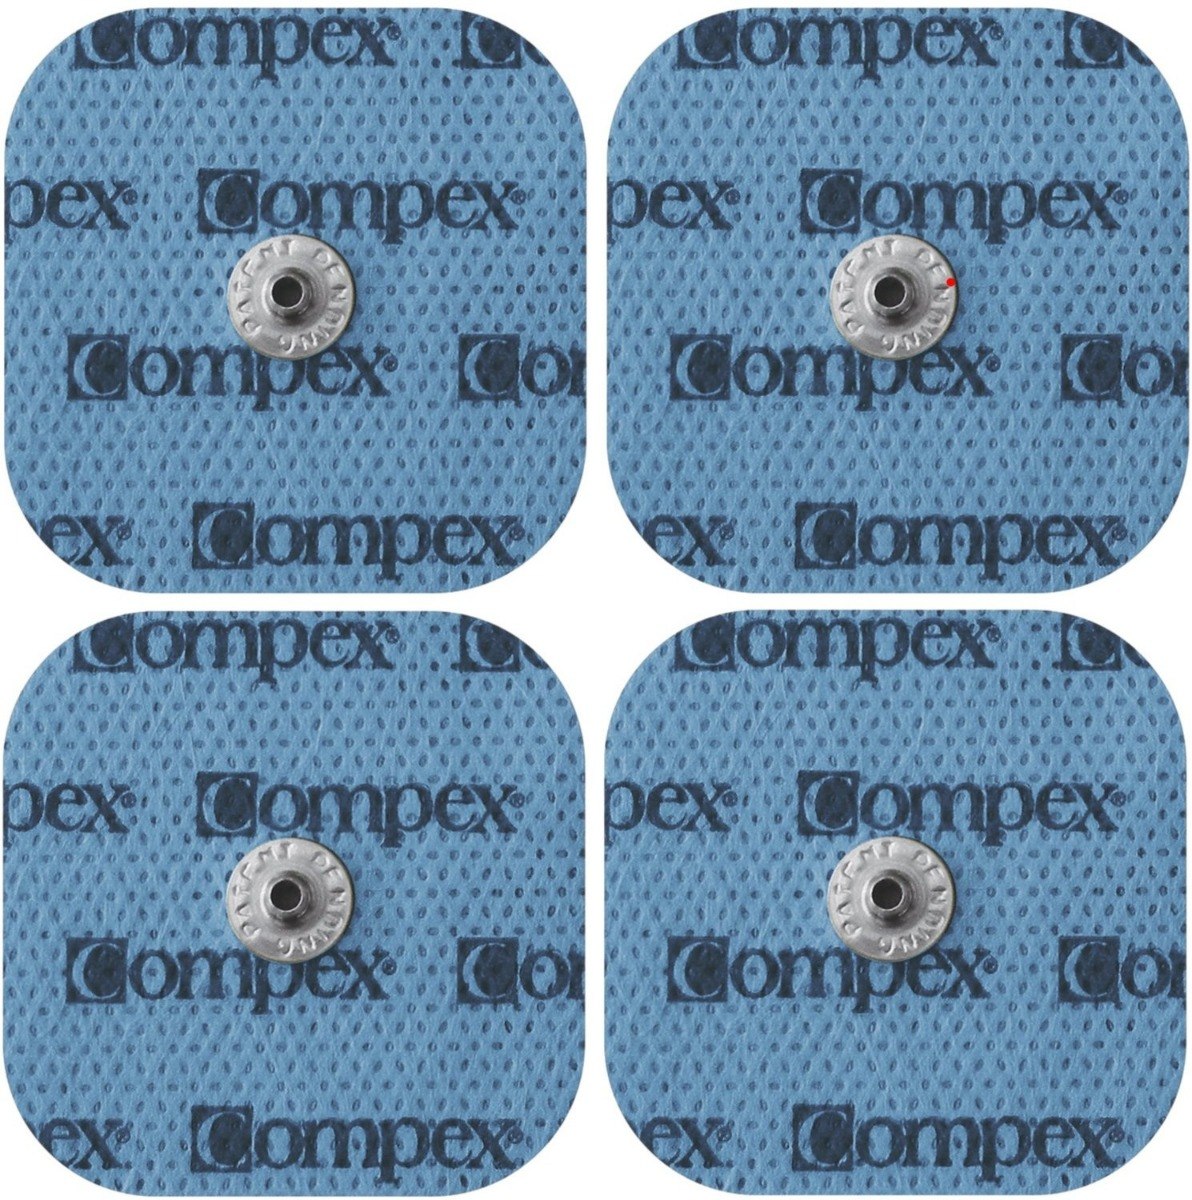 Electrodos Compex Snap 5x10